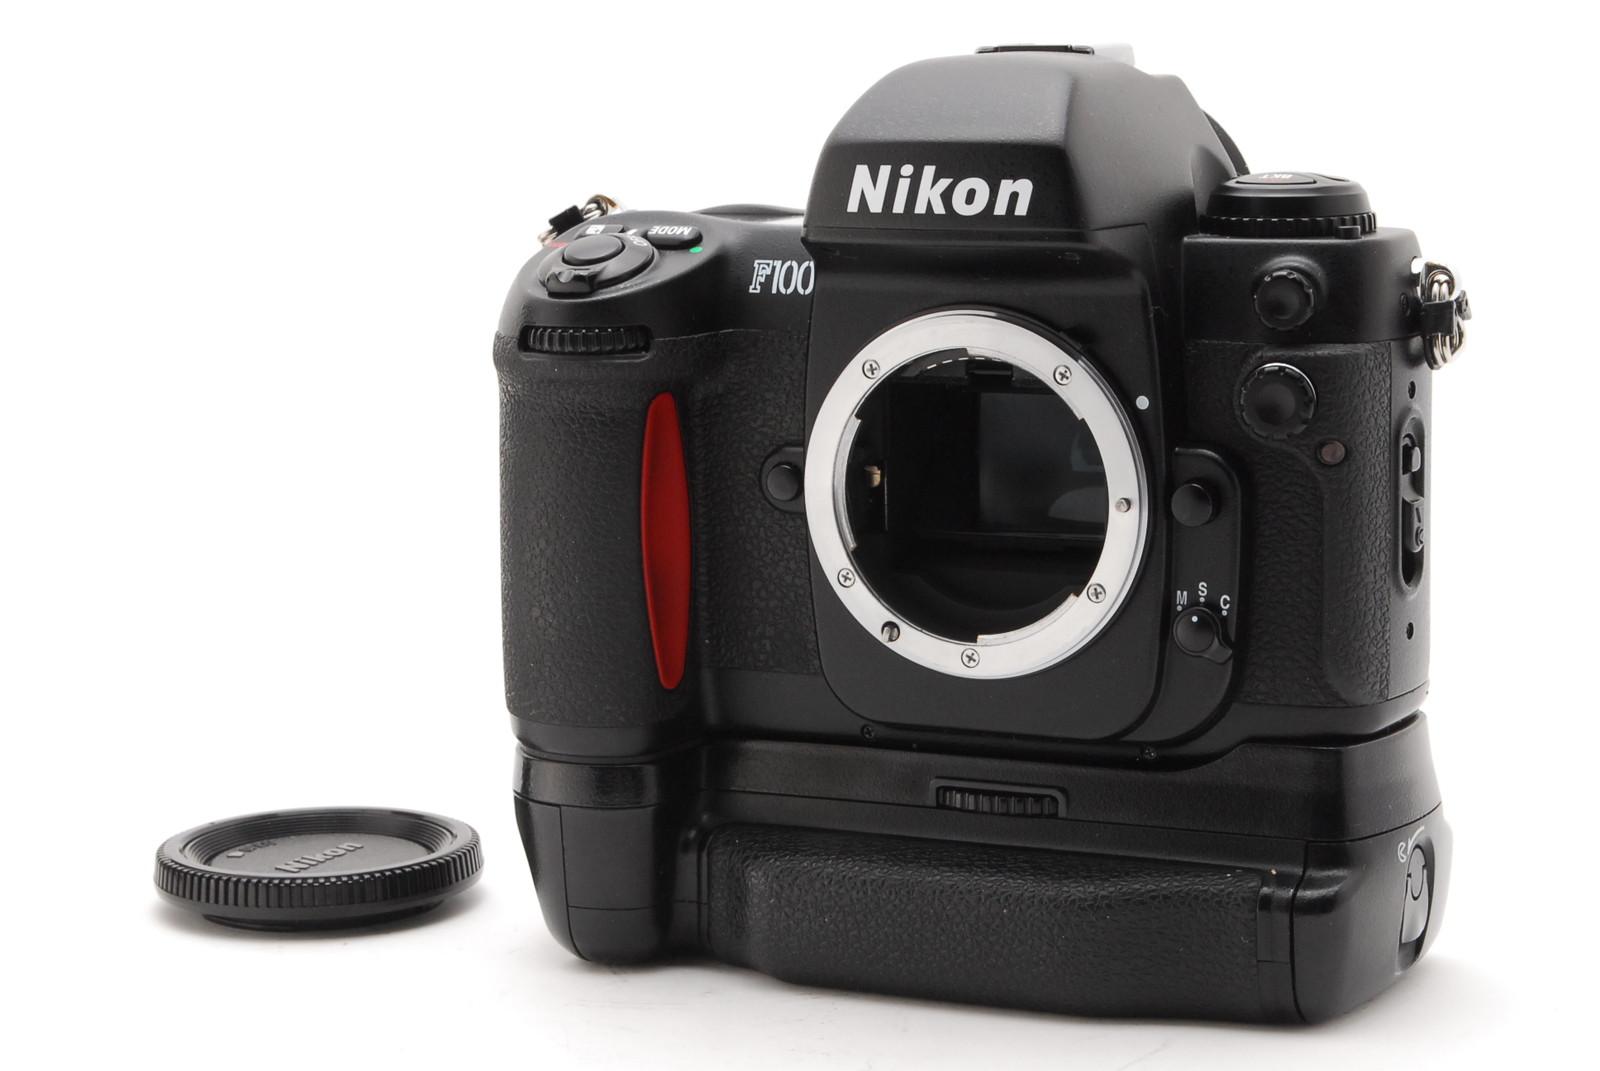 PROMOTION. NEAR MINT Nikon F100 35mm Film Camera SLR, MB-15, MF-12, Body Cap from Japan